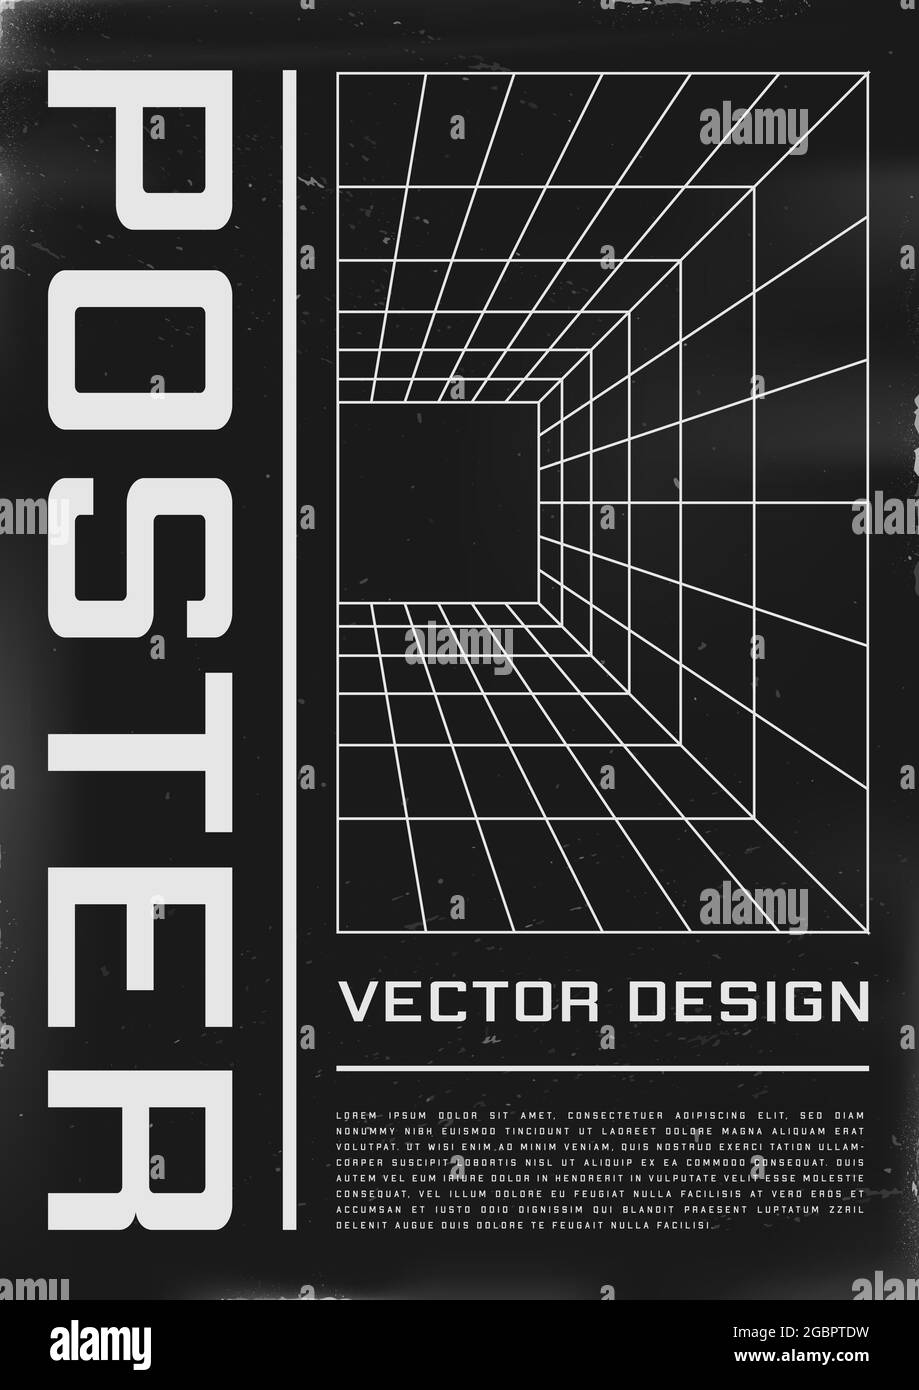 Poster dal design retrovuturistico con tunnel a griglia in prospettiva. Poster in stile cyberpunk anni '80 con tunnel laser prospettico. Modello shabby graffiato flyer Illustrazione Vettoriale